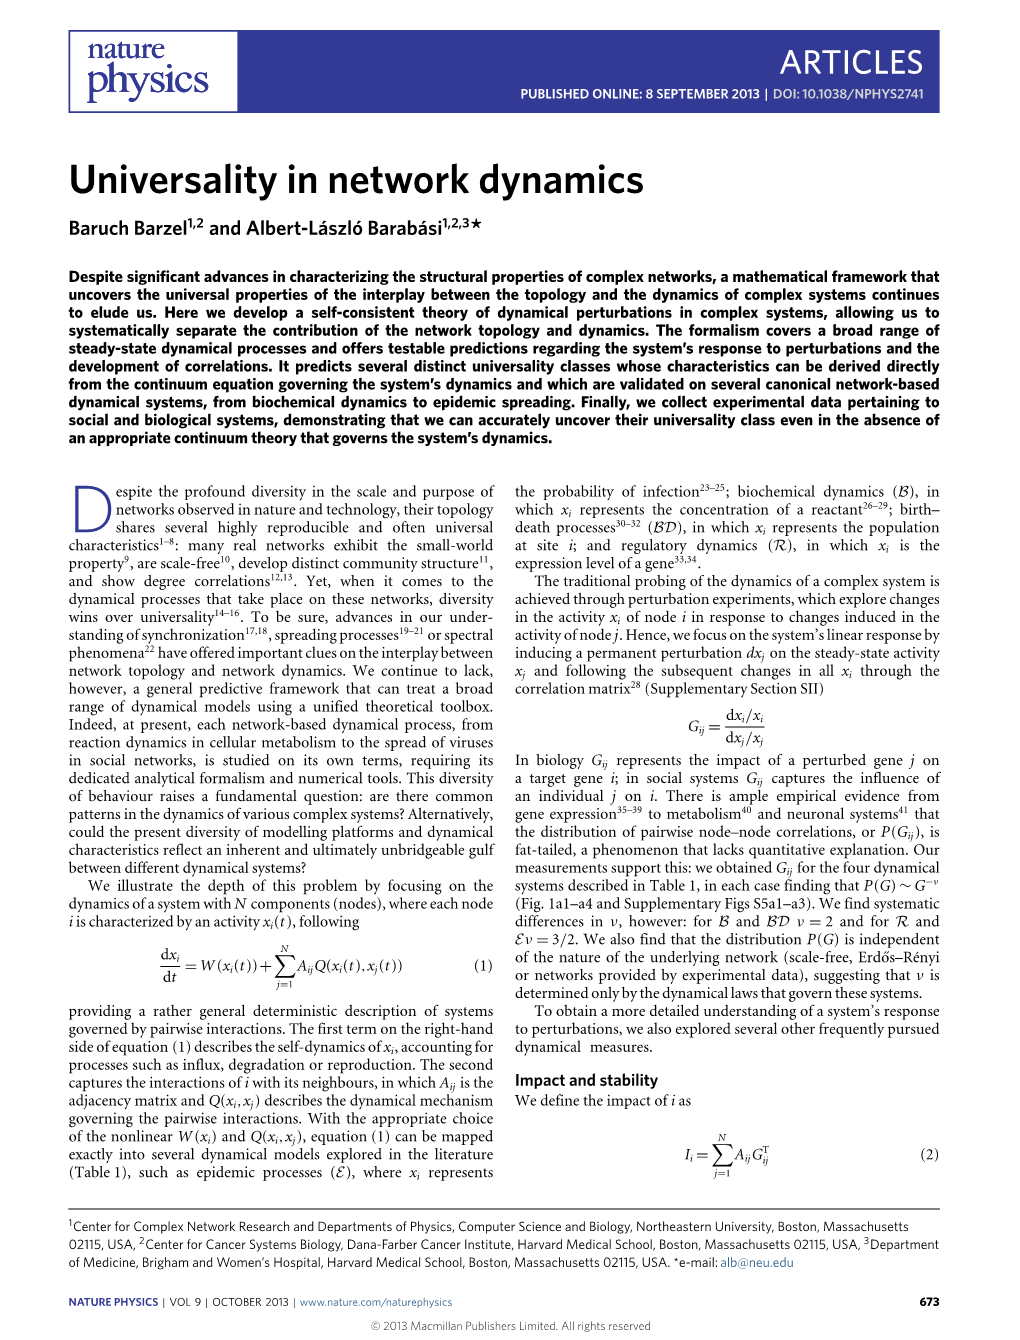 Universality in Network Dynamics Baruch Barzel1,2 and Albert-László Barabási1,2,3*